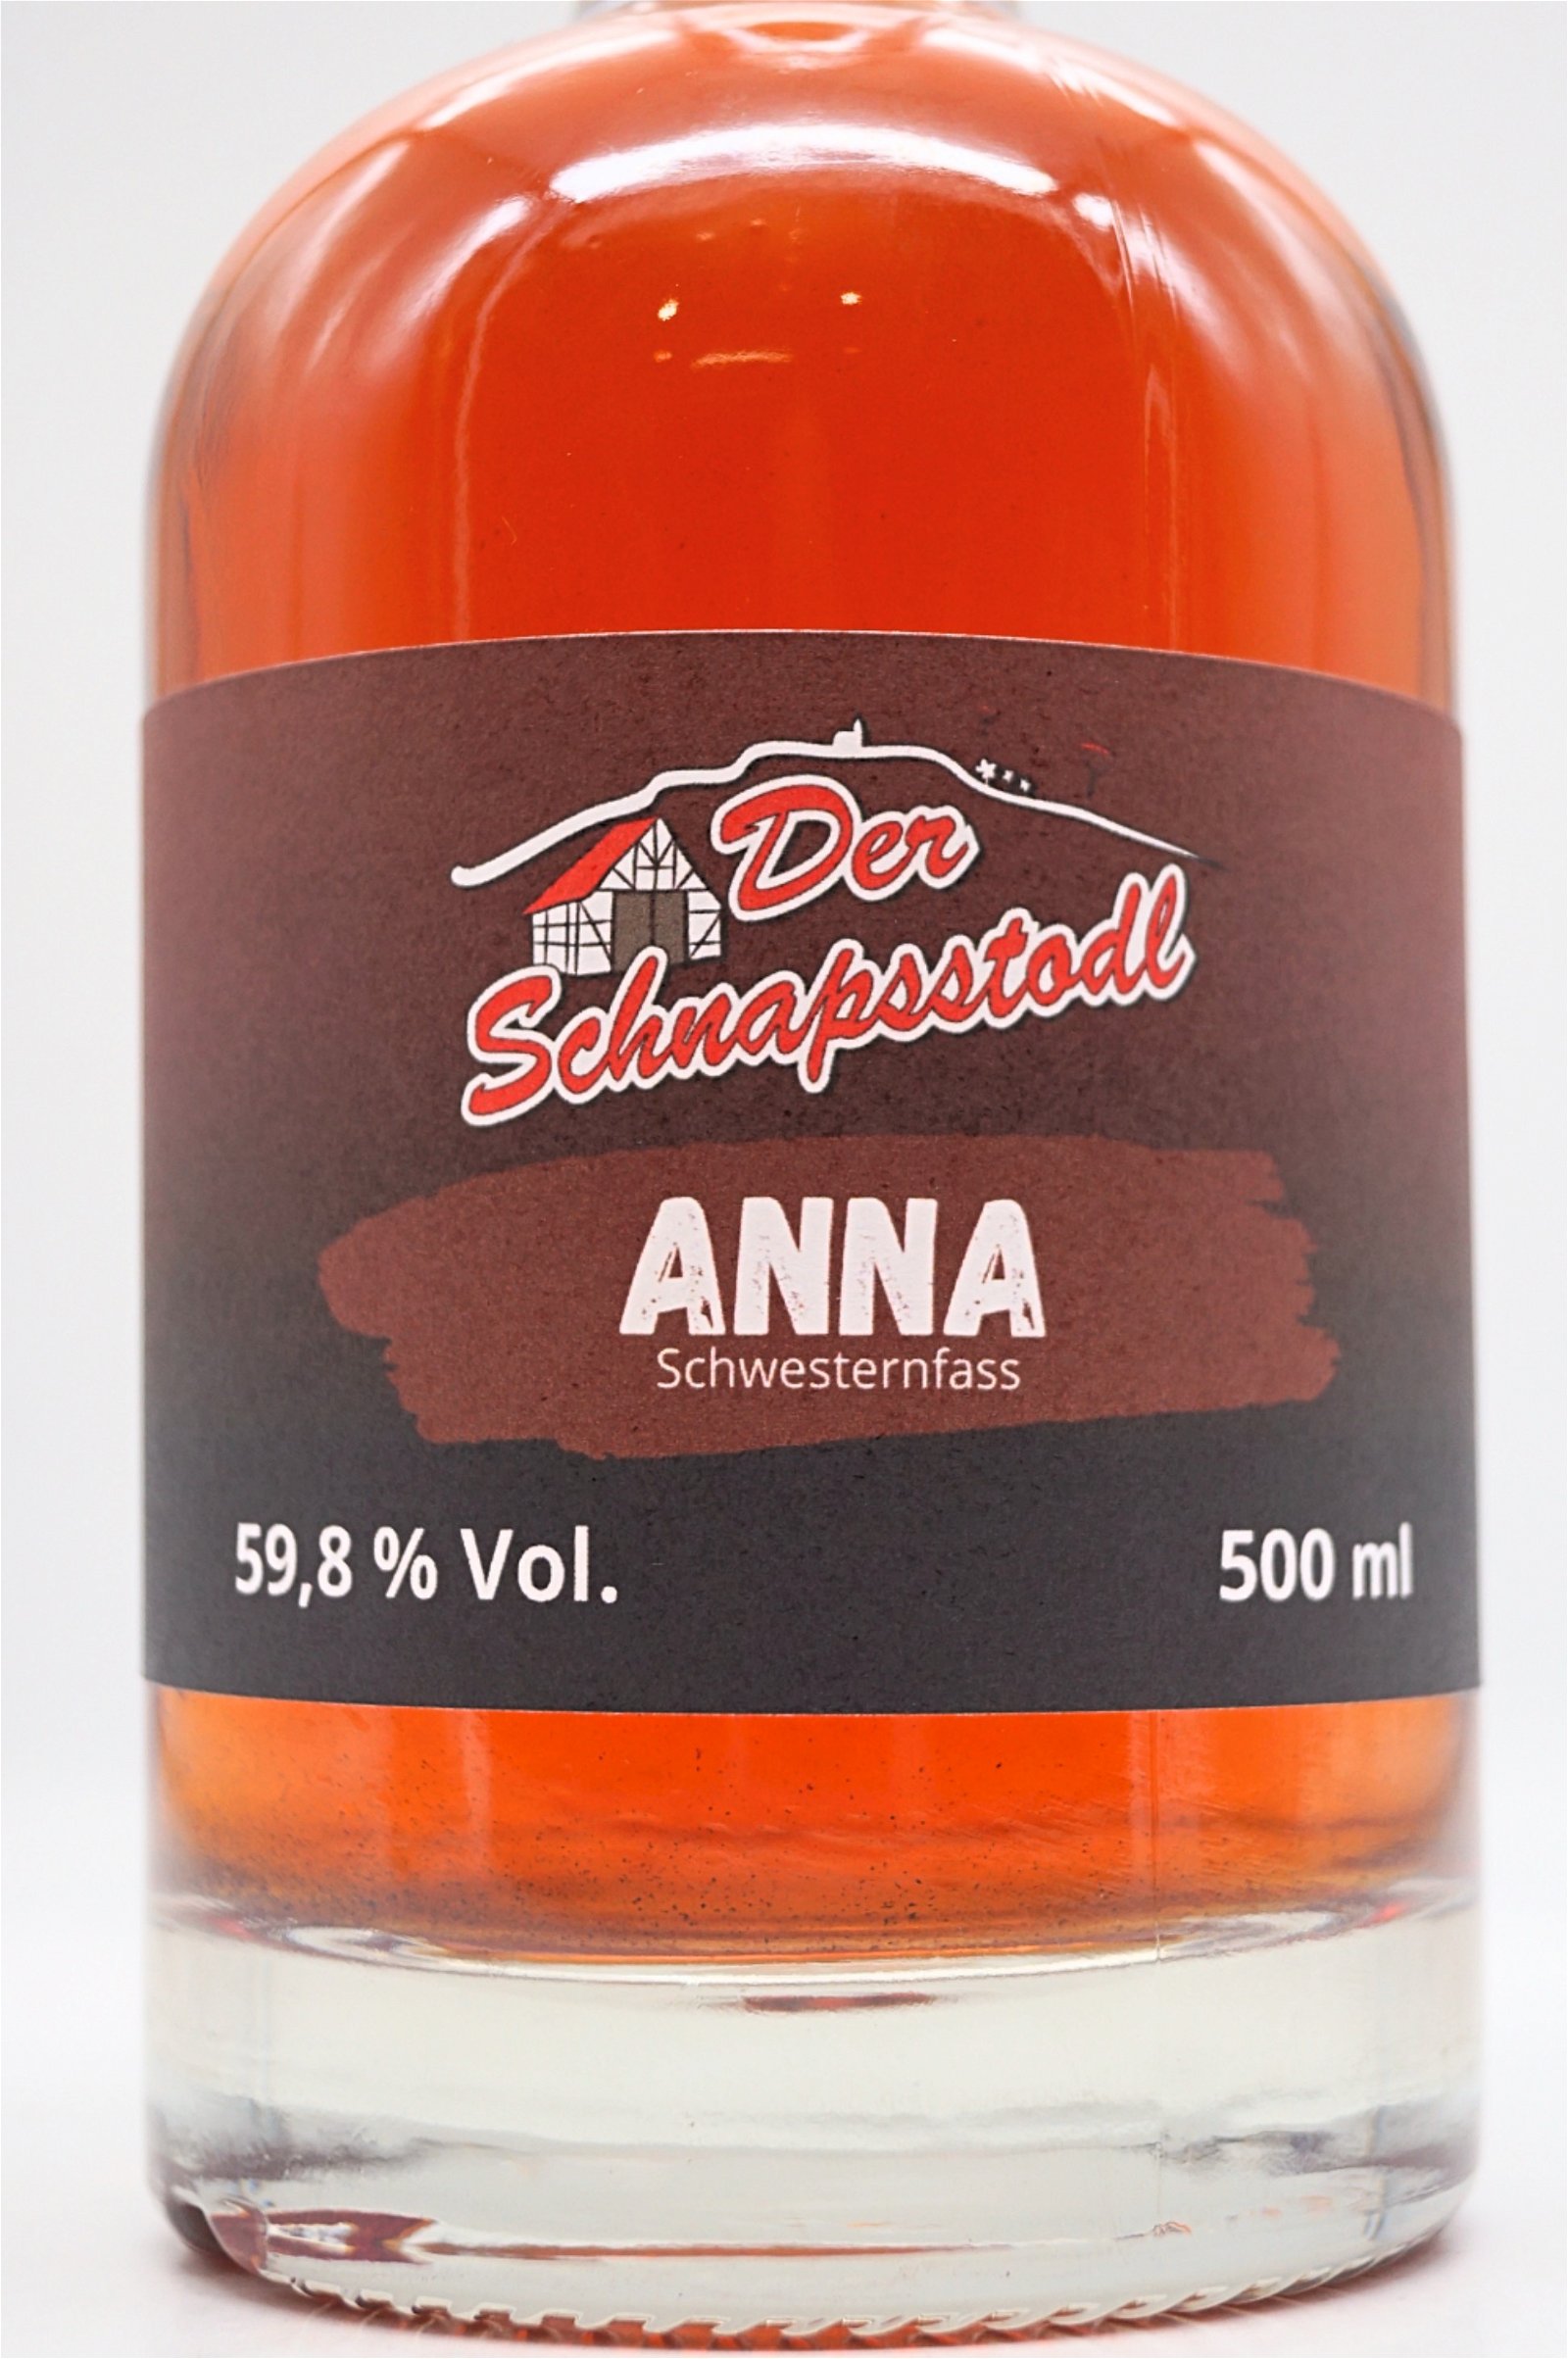 Der Schnapsstodl Single Cask Schwesternfass ANNA Single Malt Whisky